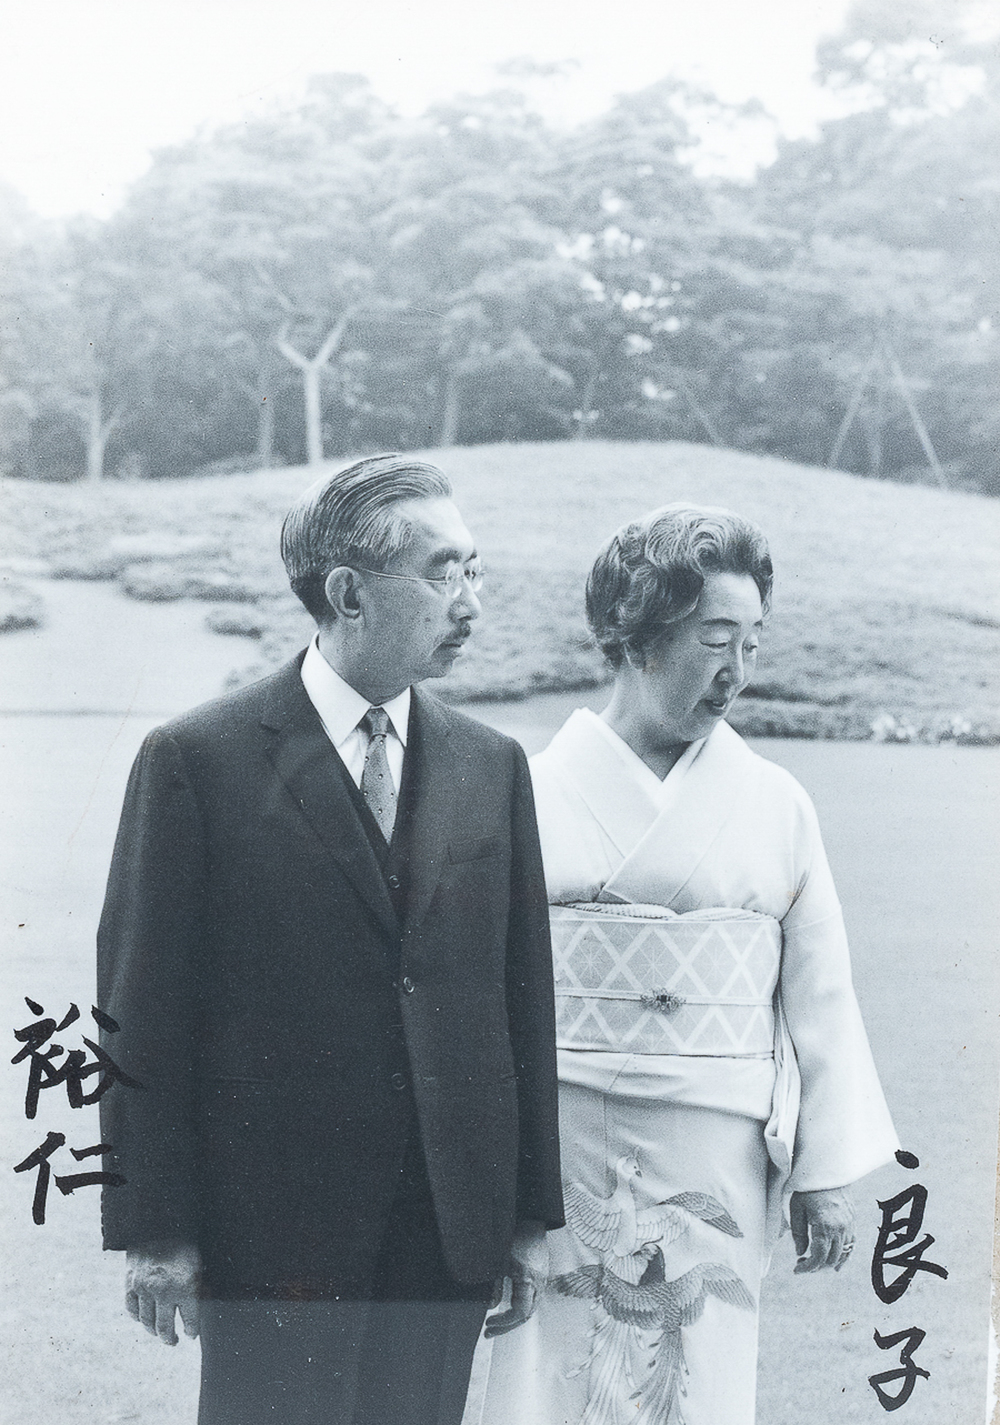 Un portrait photographique en noir et blanc sign&eacute; par l'emp&eacute;reur Hirohito et l'imp&eacute;ratrice Nagako, Japon, ann&eacute;es '70